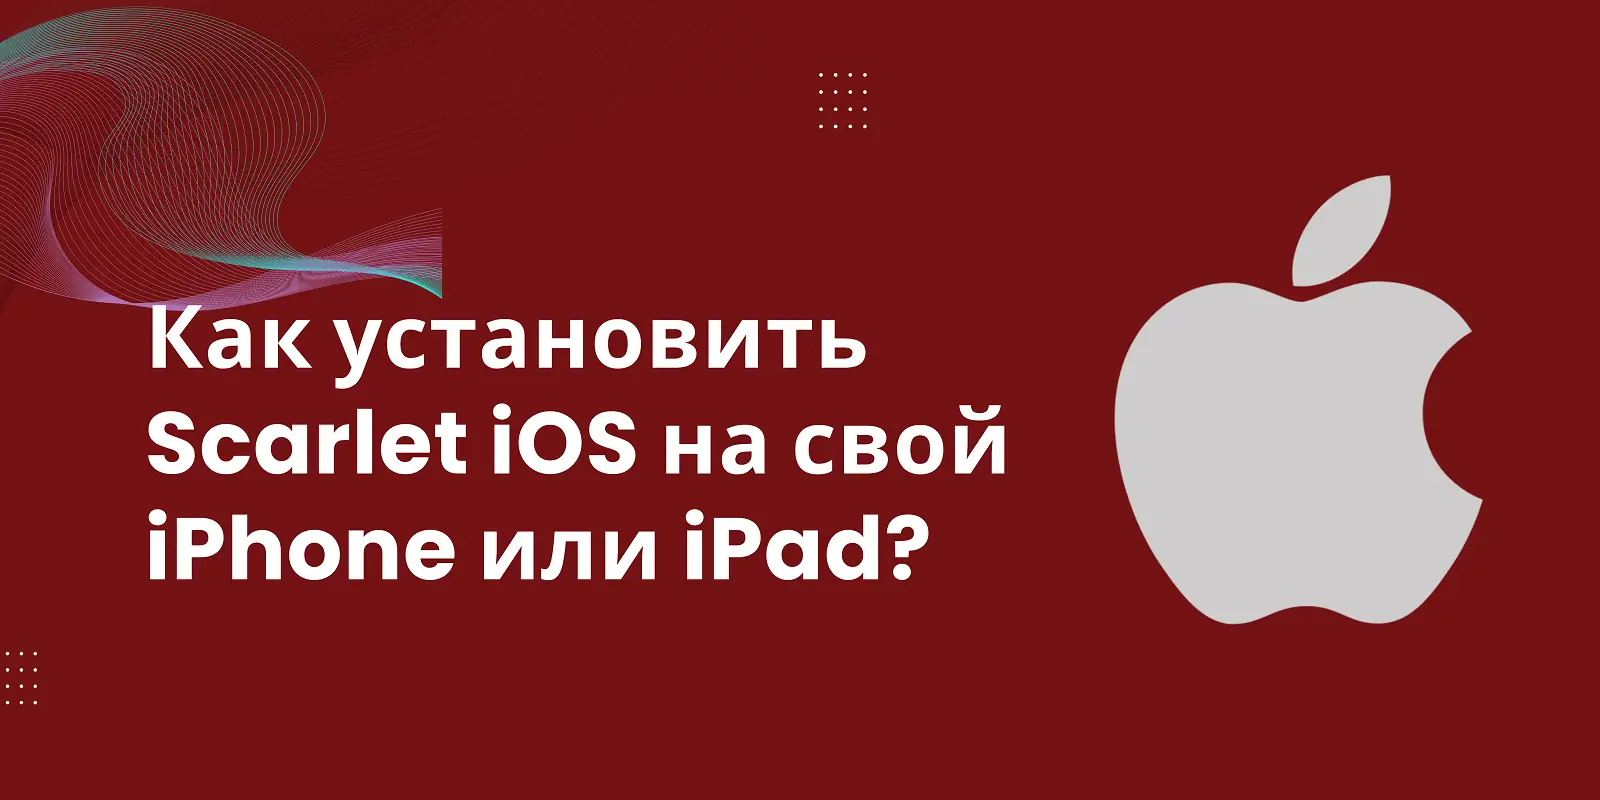 Как установить Scarlet iOS на свой iPhone или iPad?